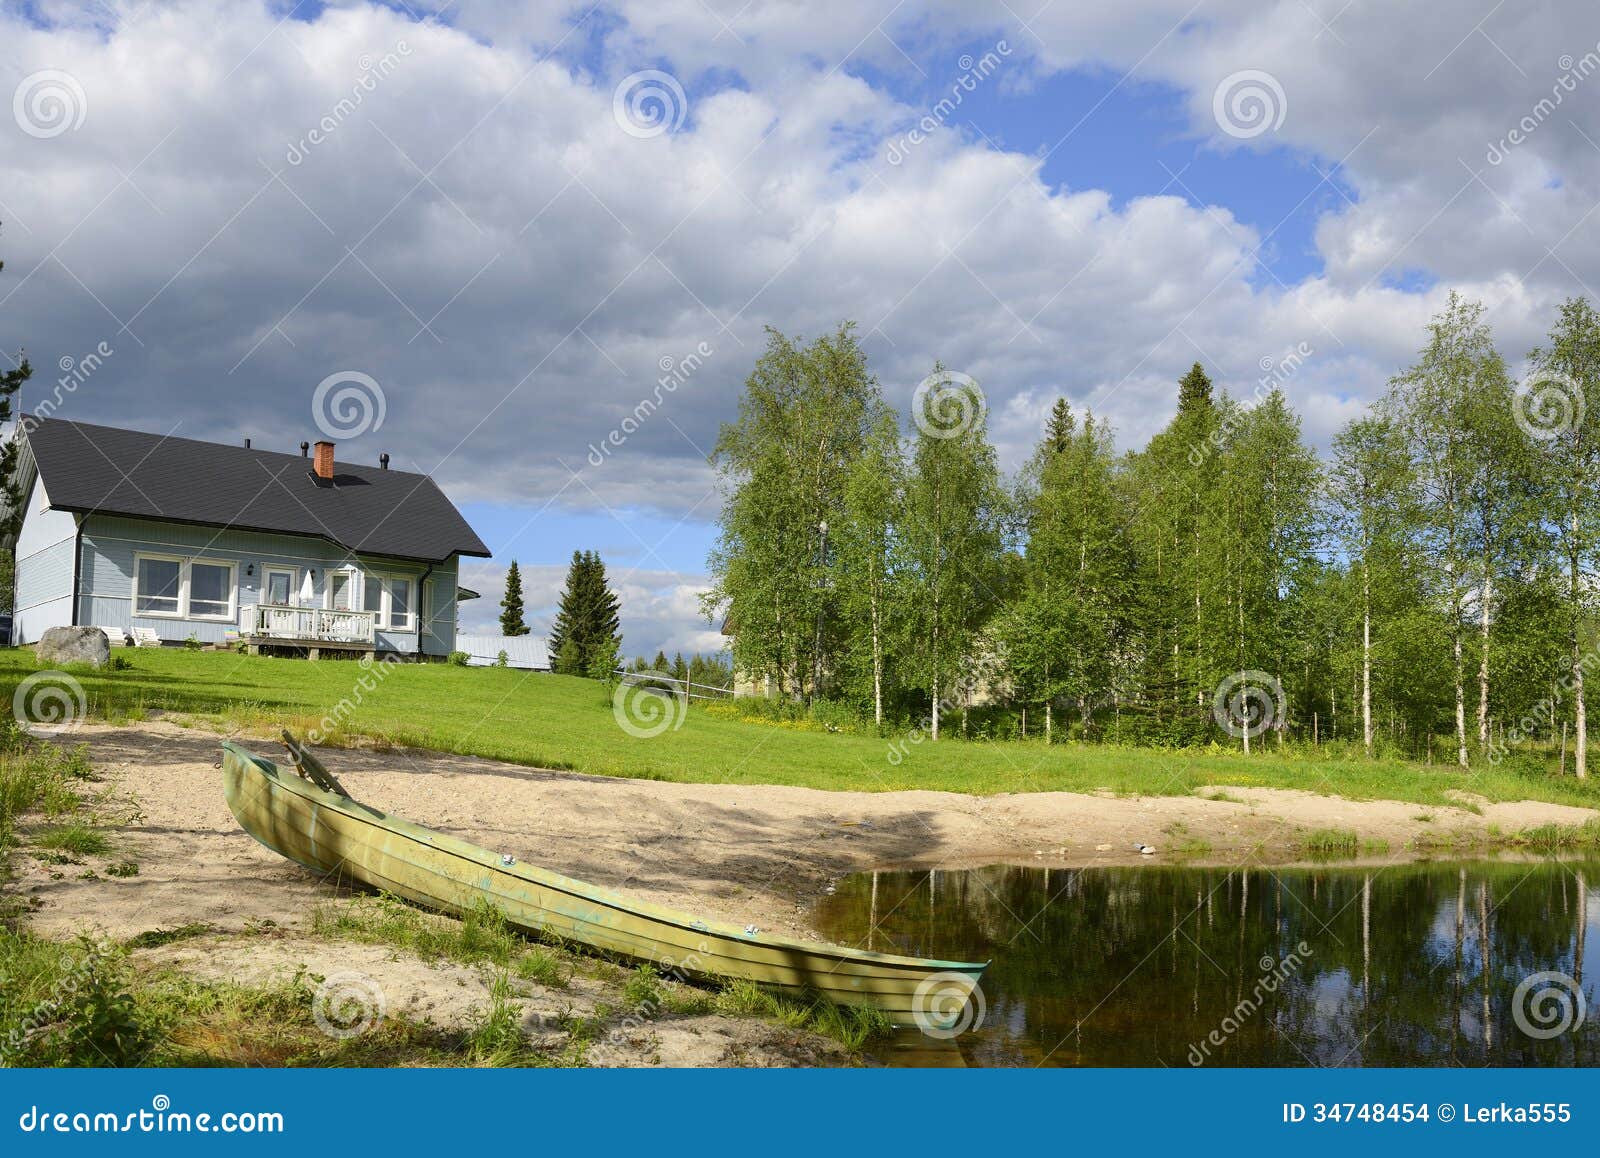 Haus auf dem kleinen See stockfoto. Bild von abenteuer ...